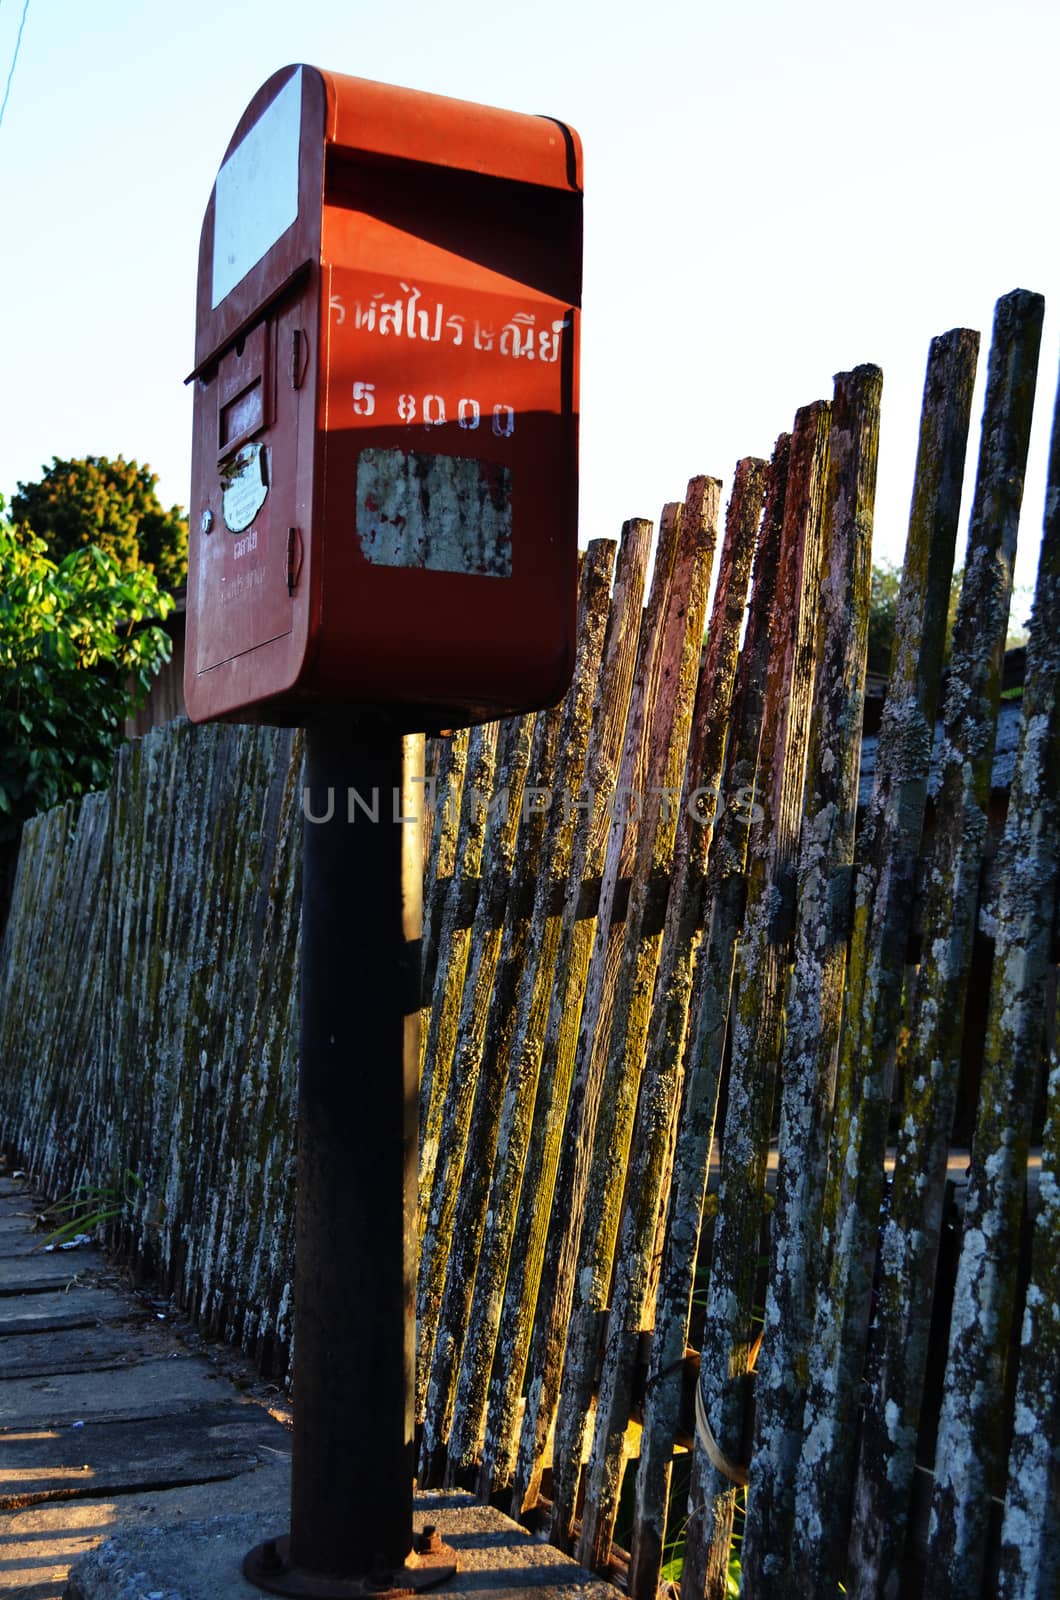 Little Metal Postbox in Rural by kobfujar